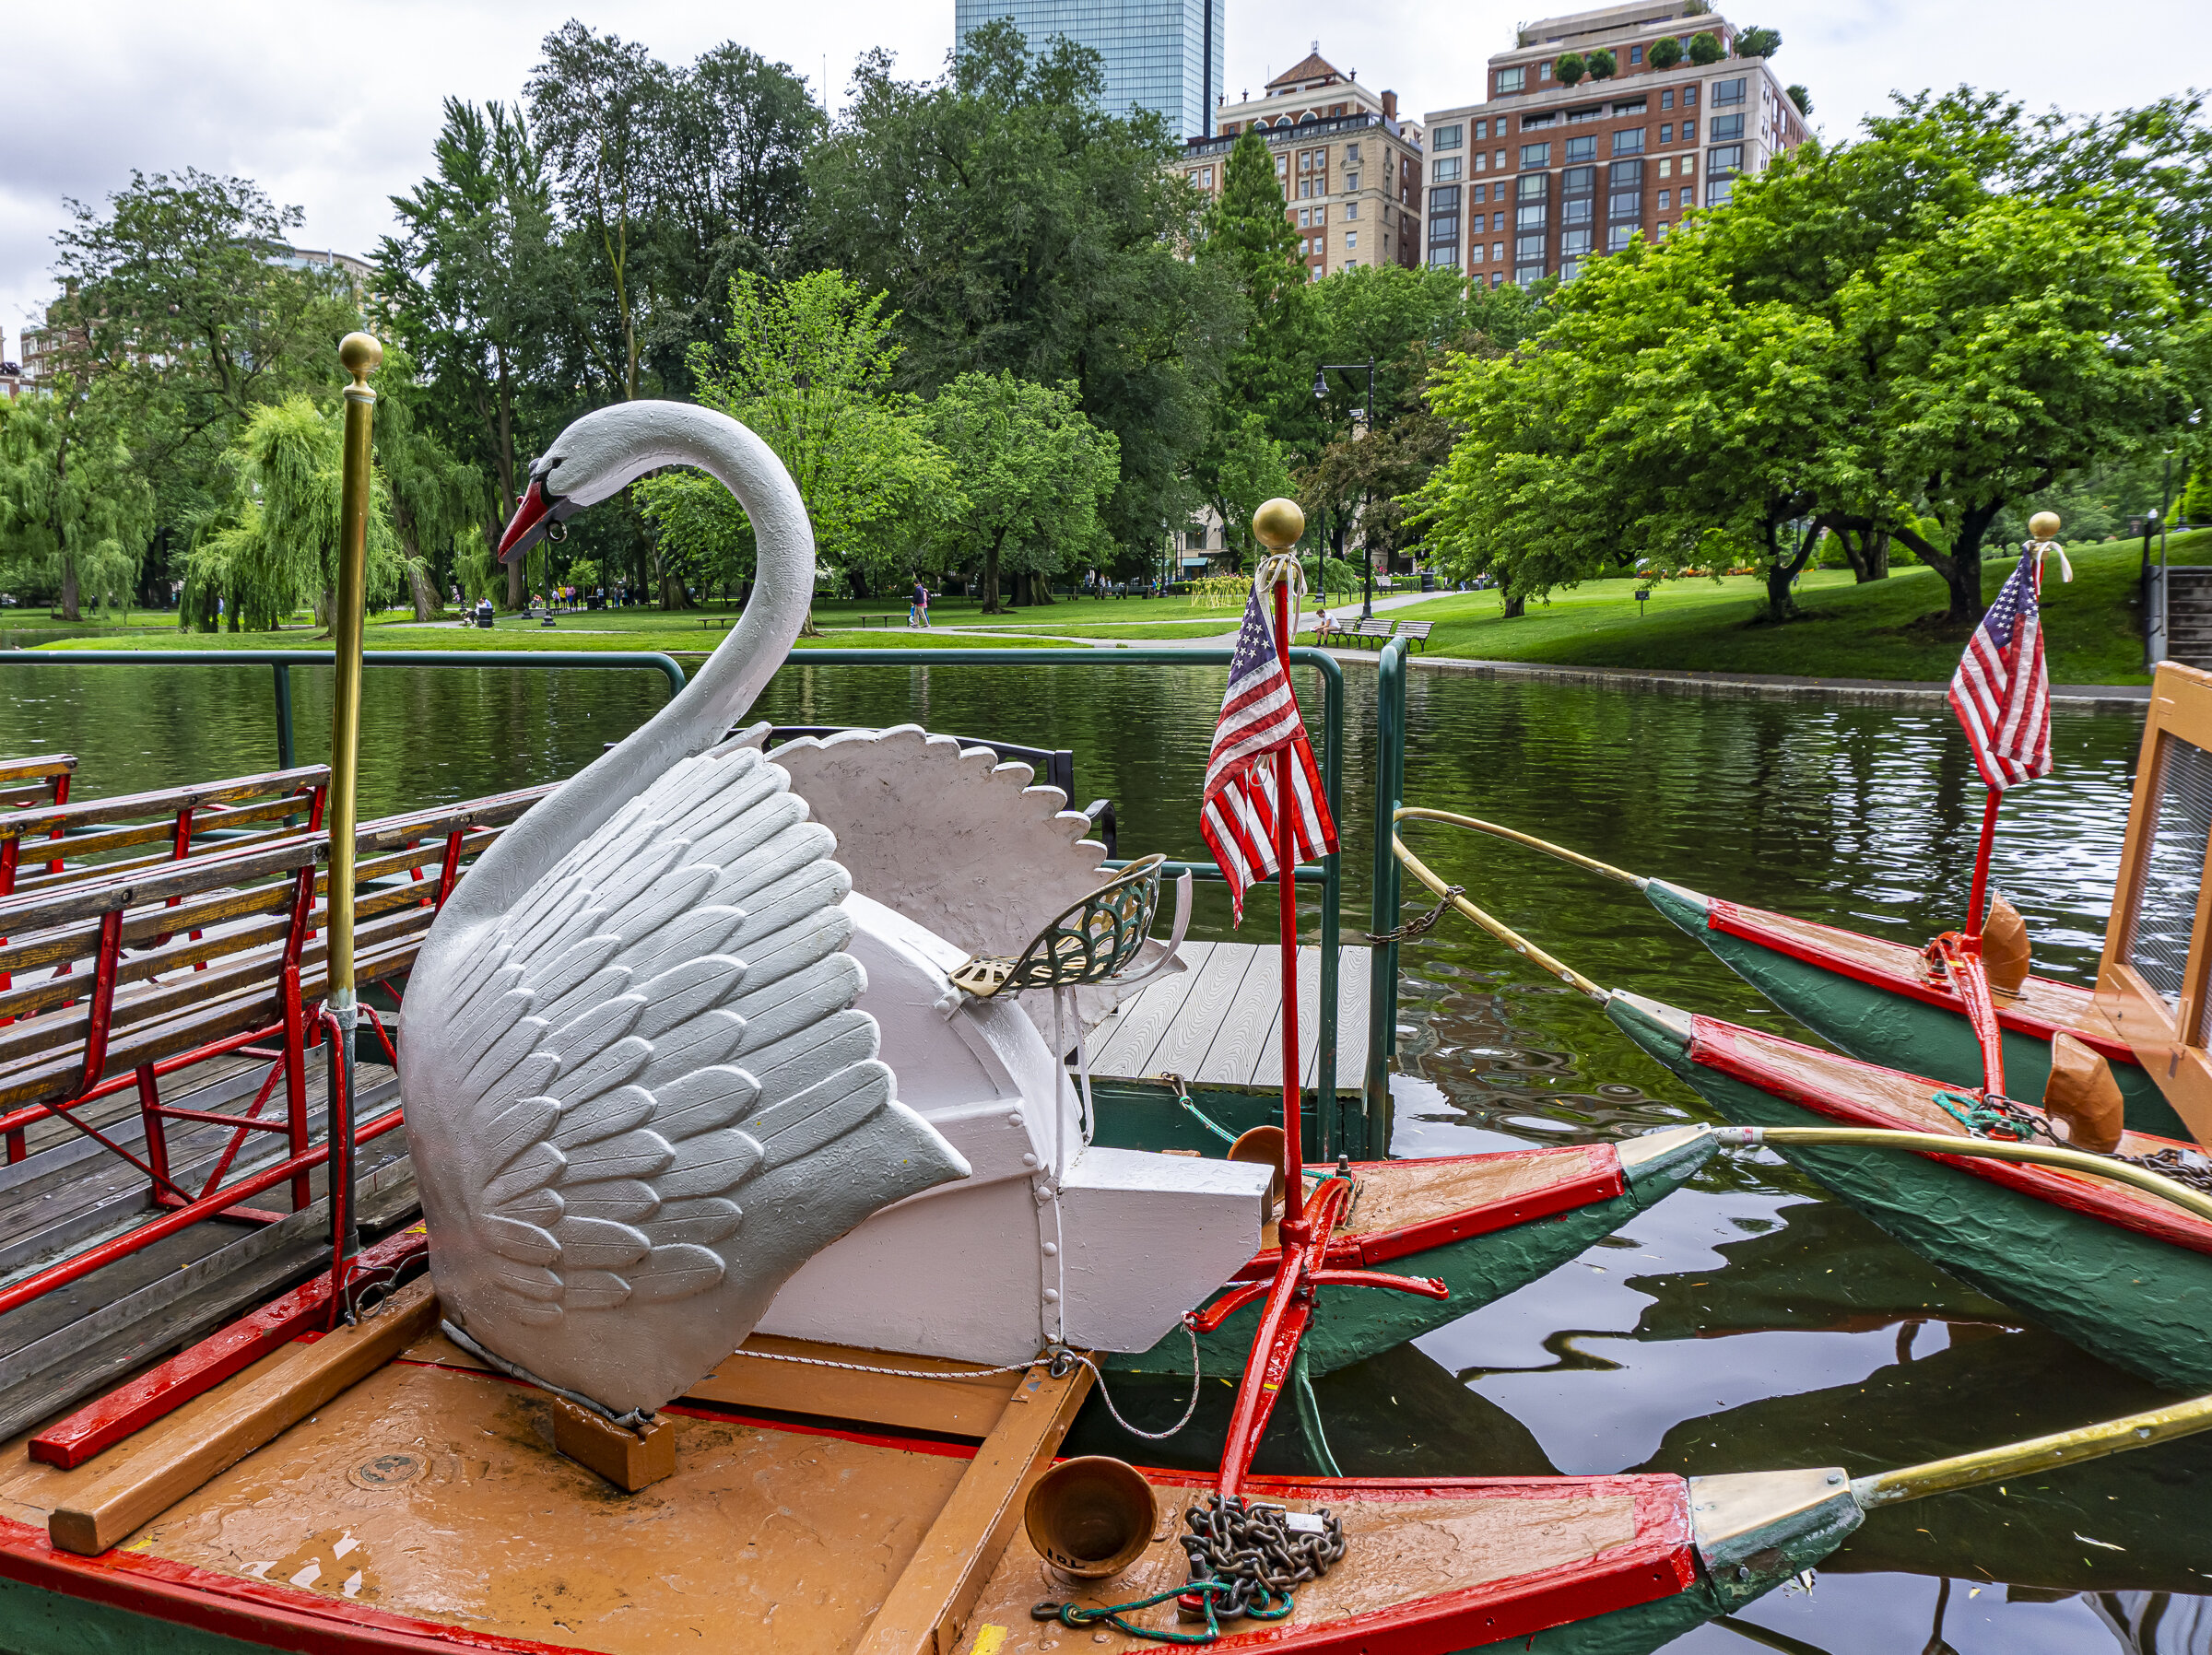 Swan Boat in Boston Public Garden